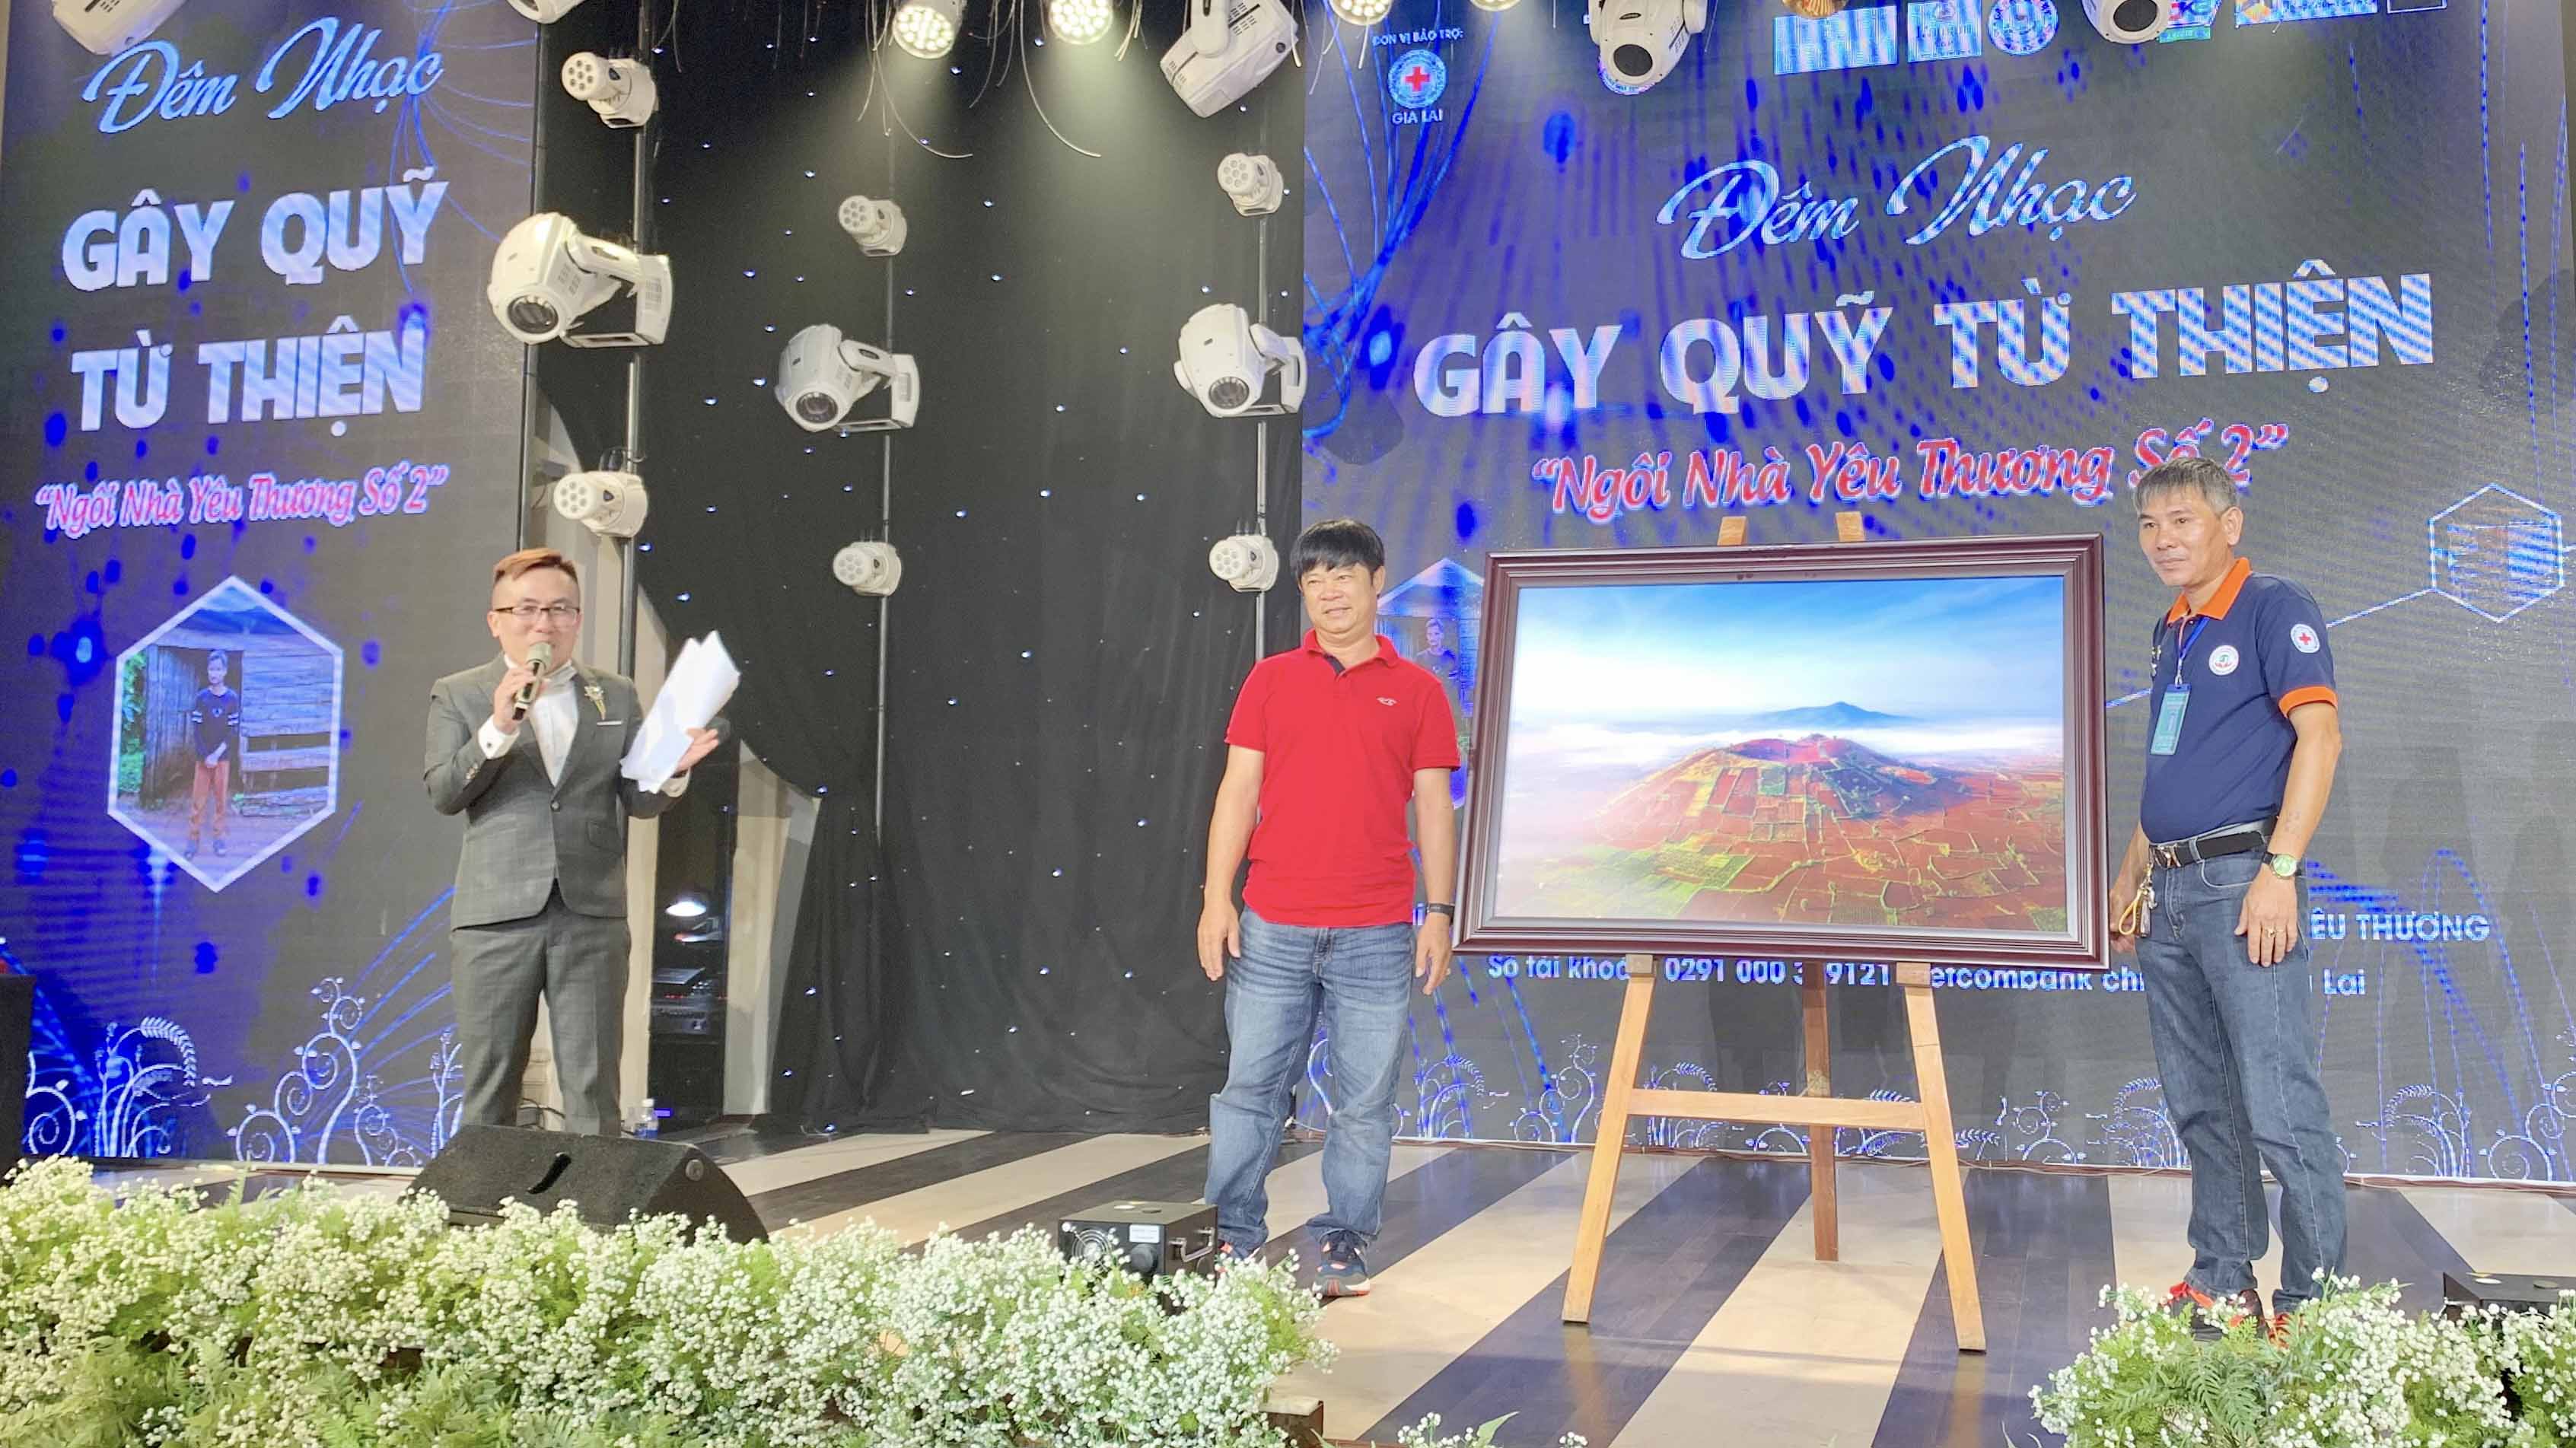 Bức ảnh “Núi lửa Chư Đăng Ya” của nhiếp ảnh gia Nguyễn Ngọc Hòa ủng hộ với giá khởi điểm 3,5 triệu đã được một mạnh thường quân mua lại với giá 5 triệu đồng tại đêm nhạc. Ảnh: Như Nguyện